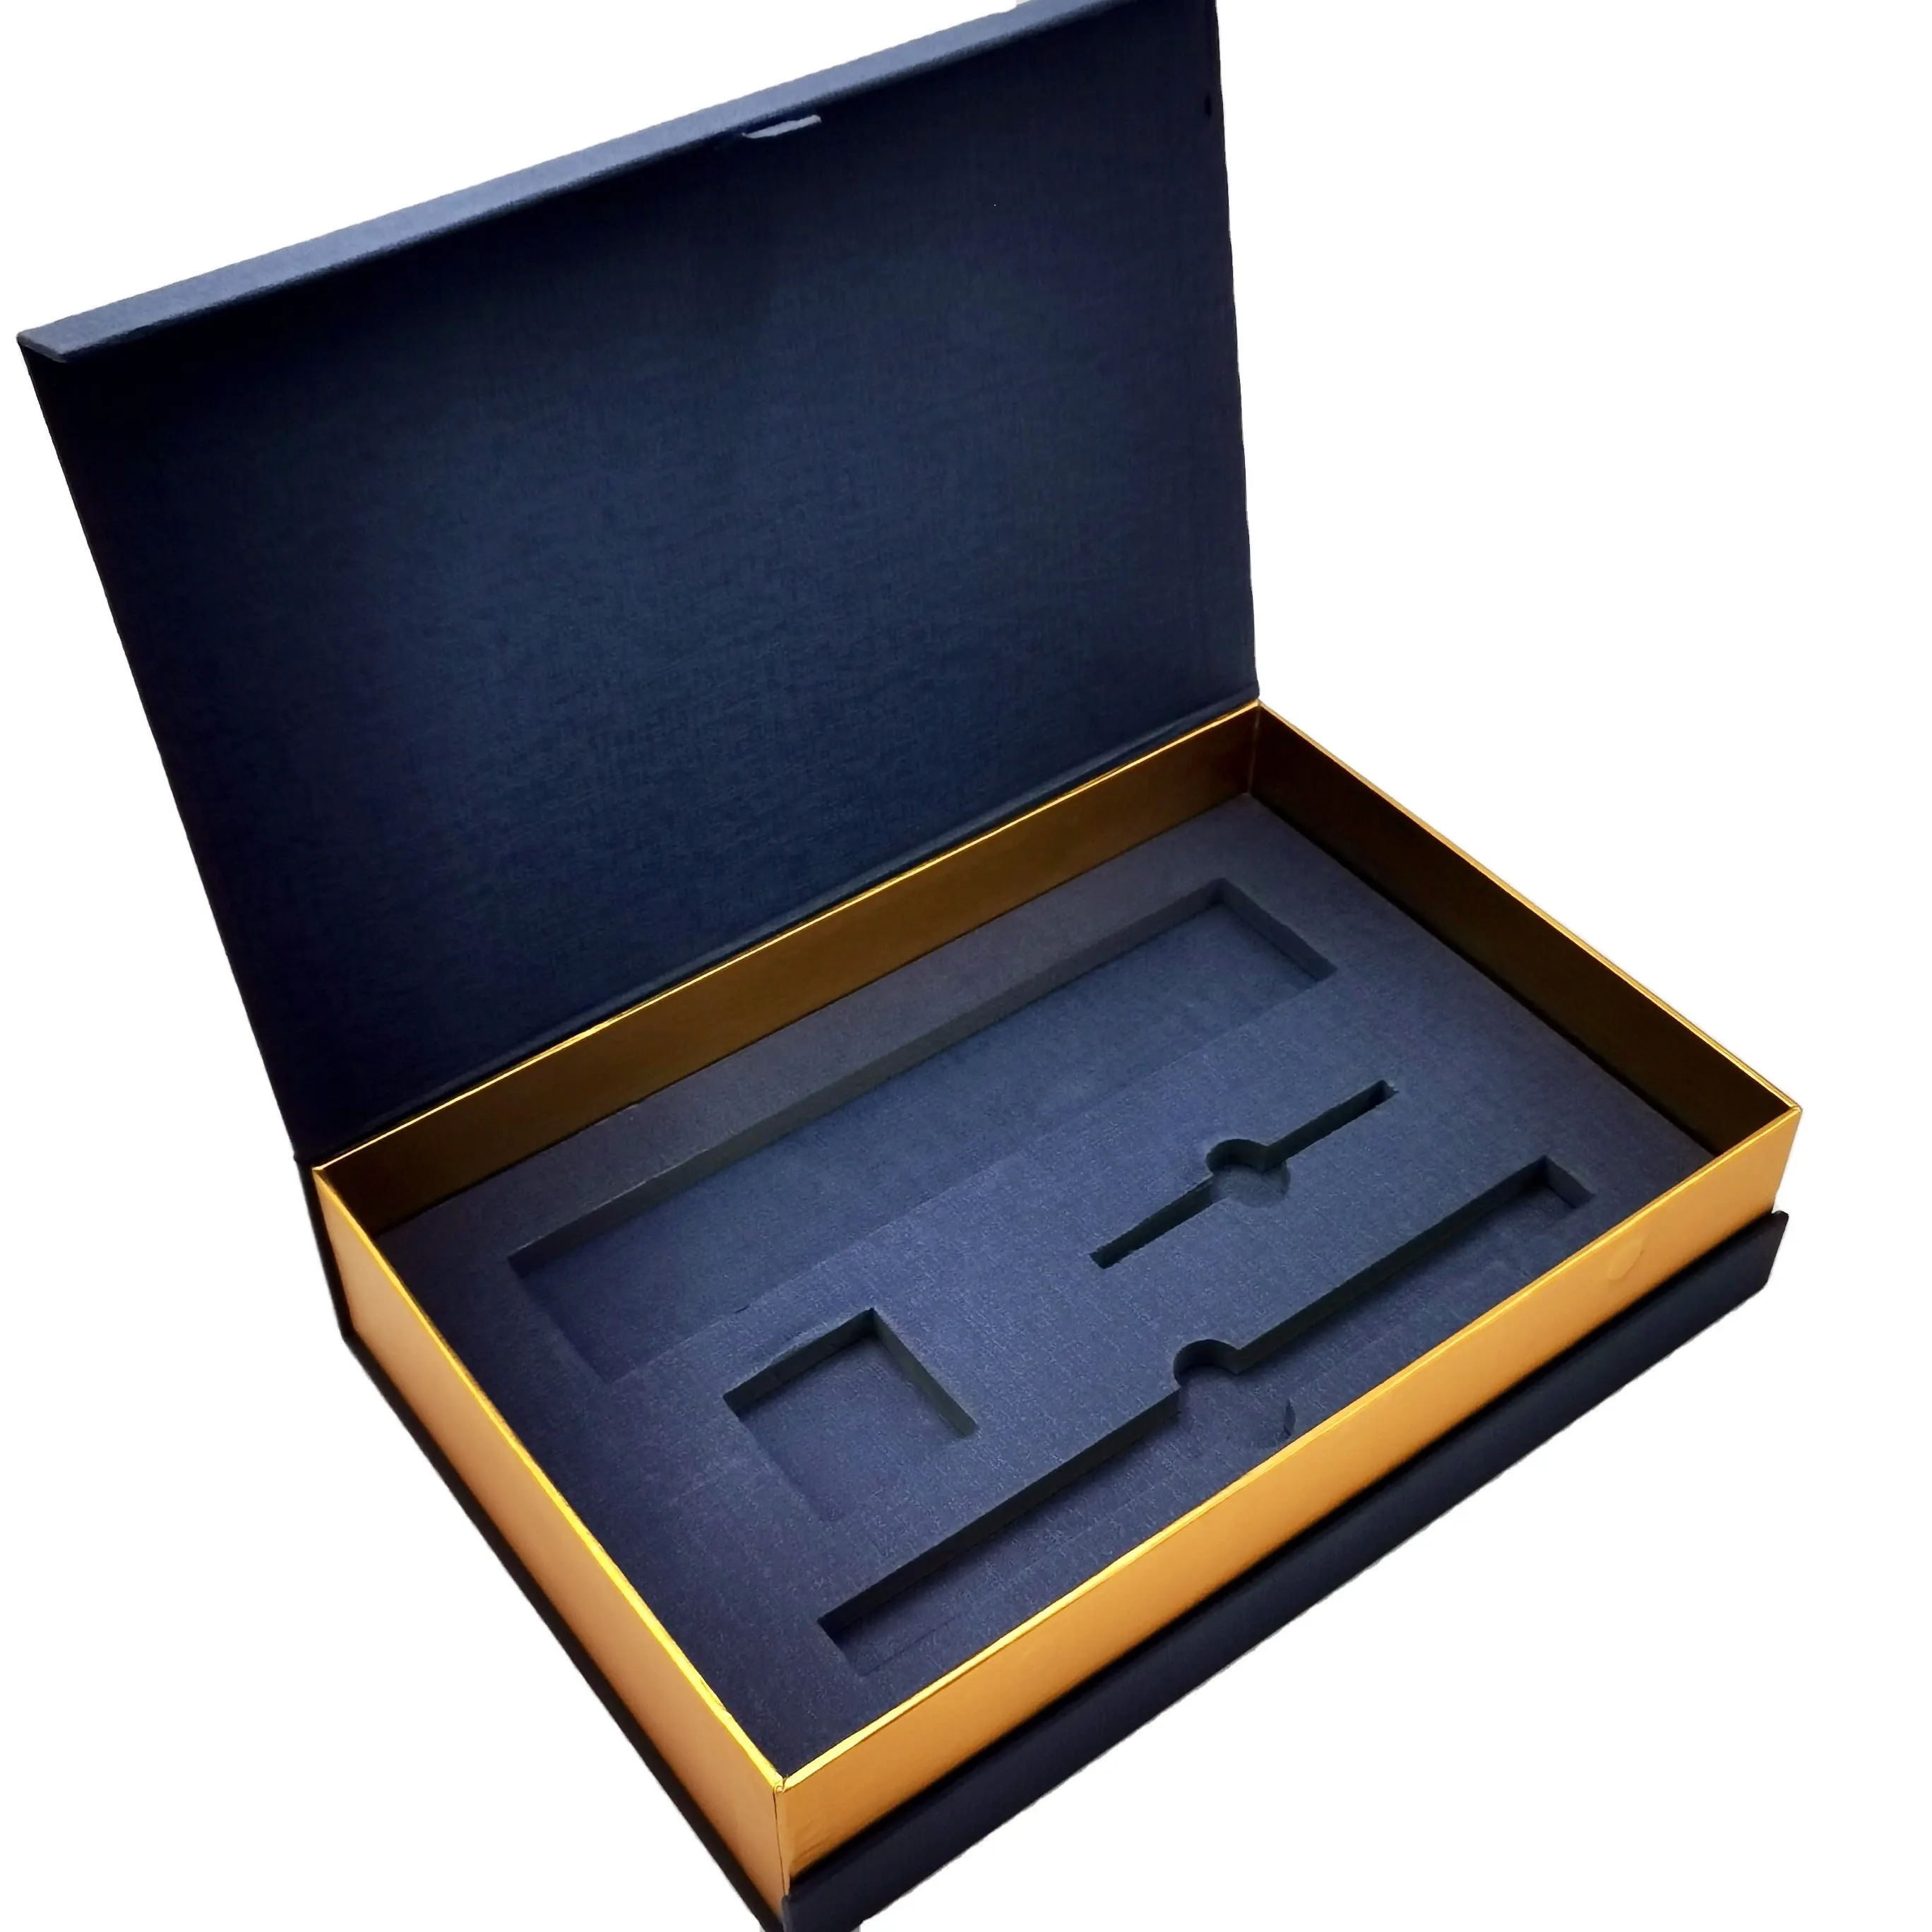 El yapımı Logo baskılı özel Insert manyetik hediye kutusu kozmetik seti için lüks cilt bakımı kutusu ambalaj